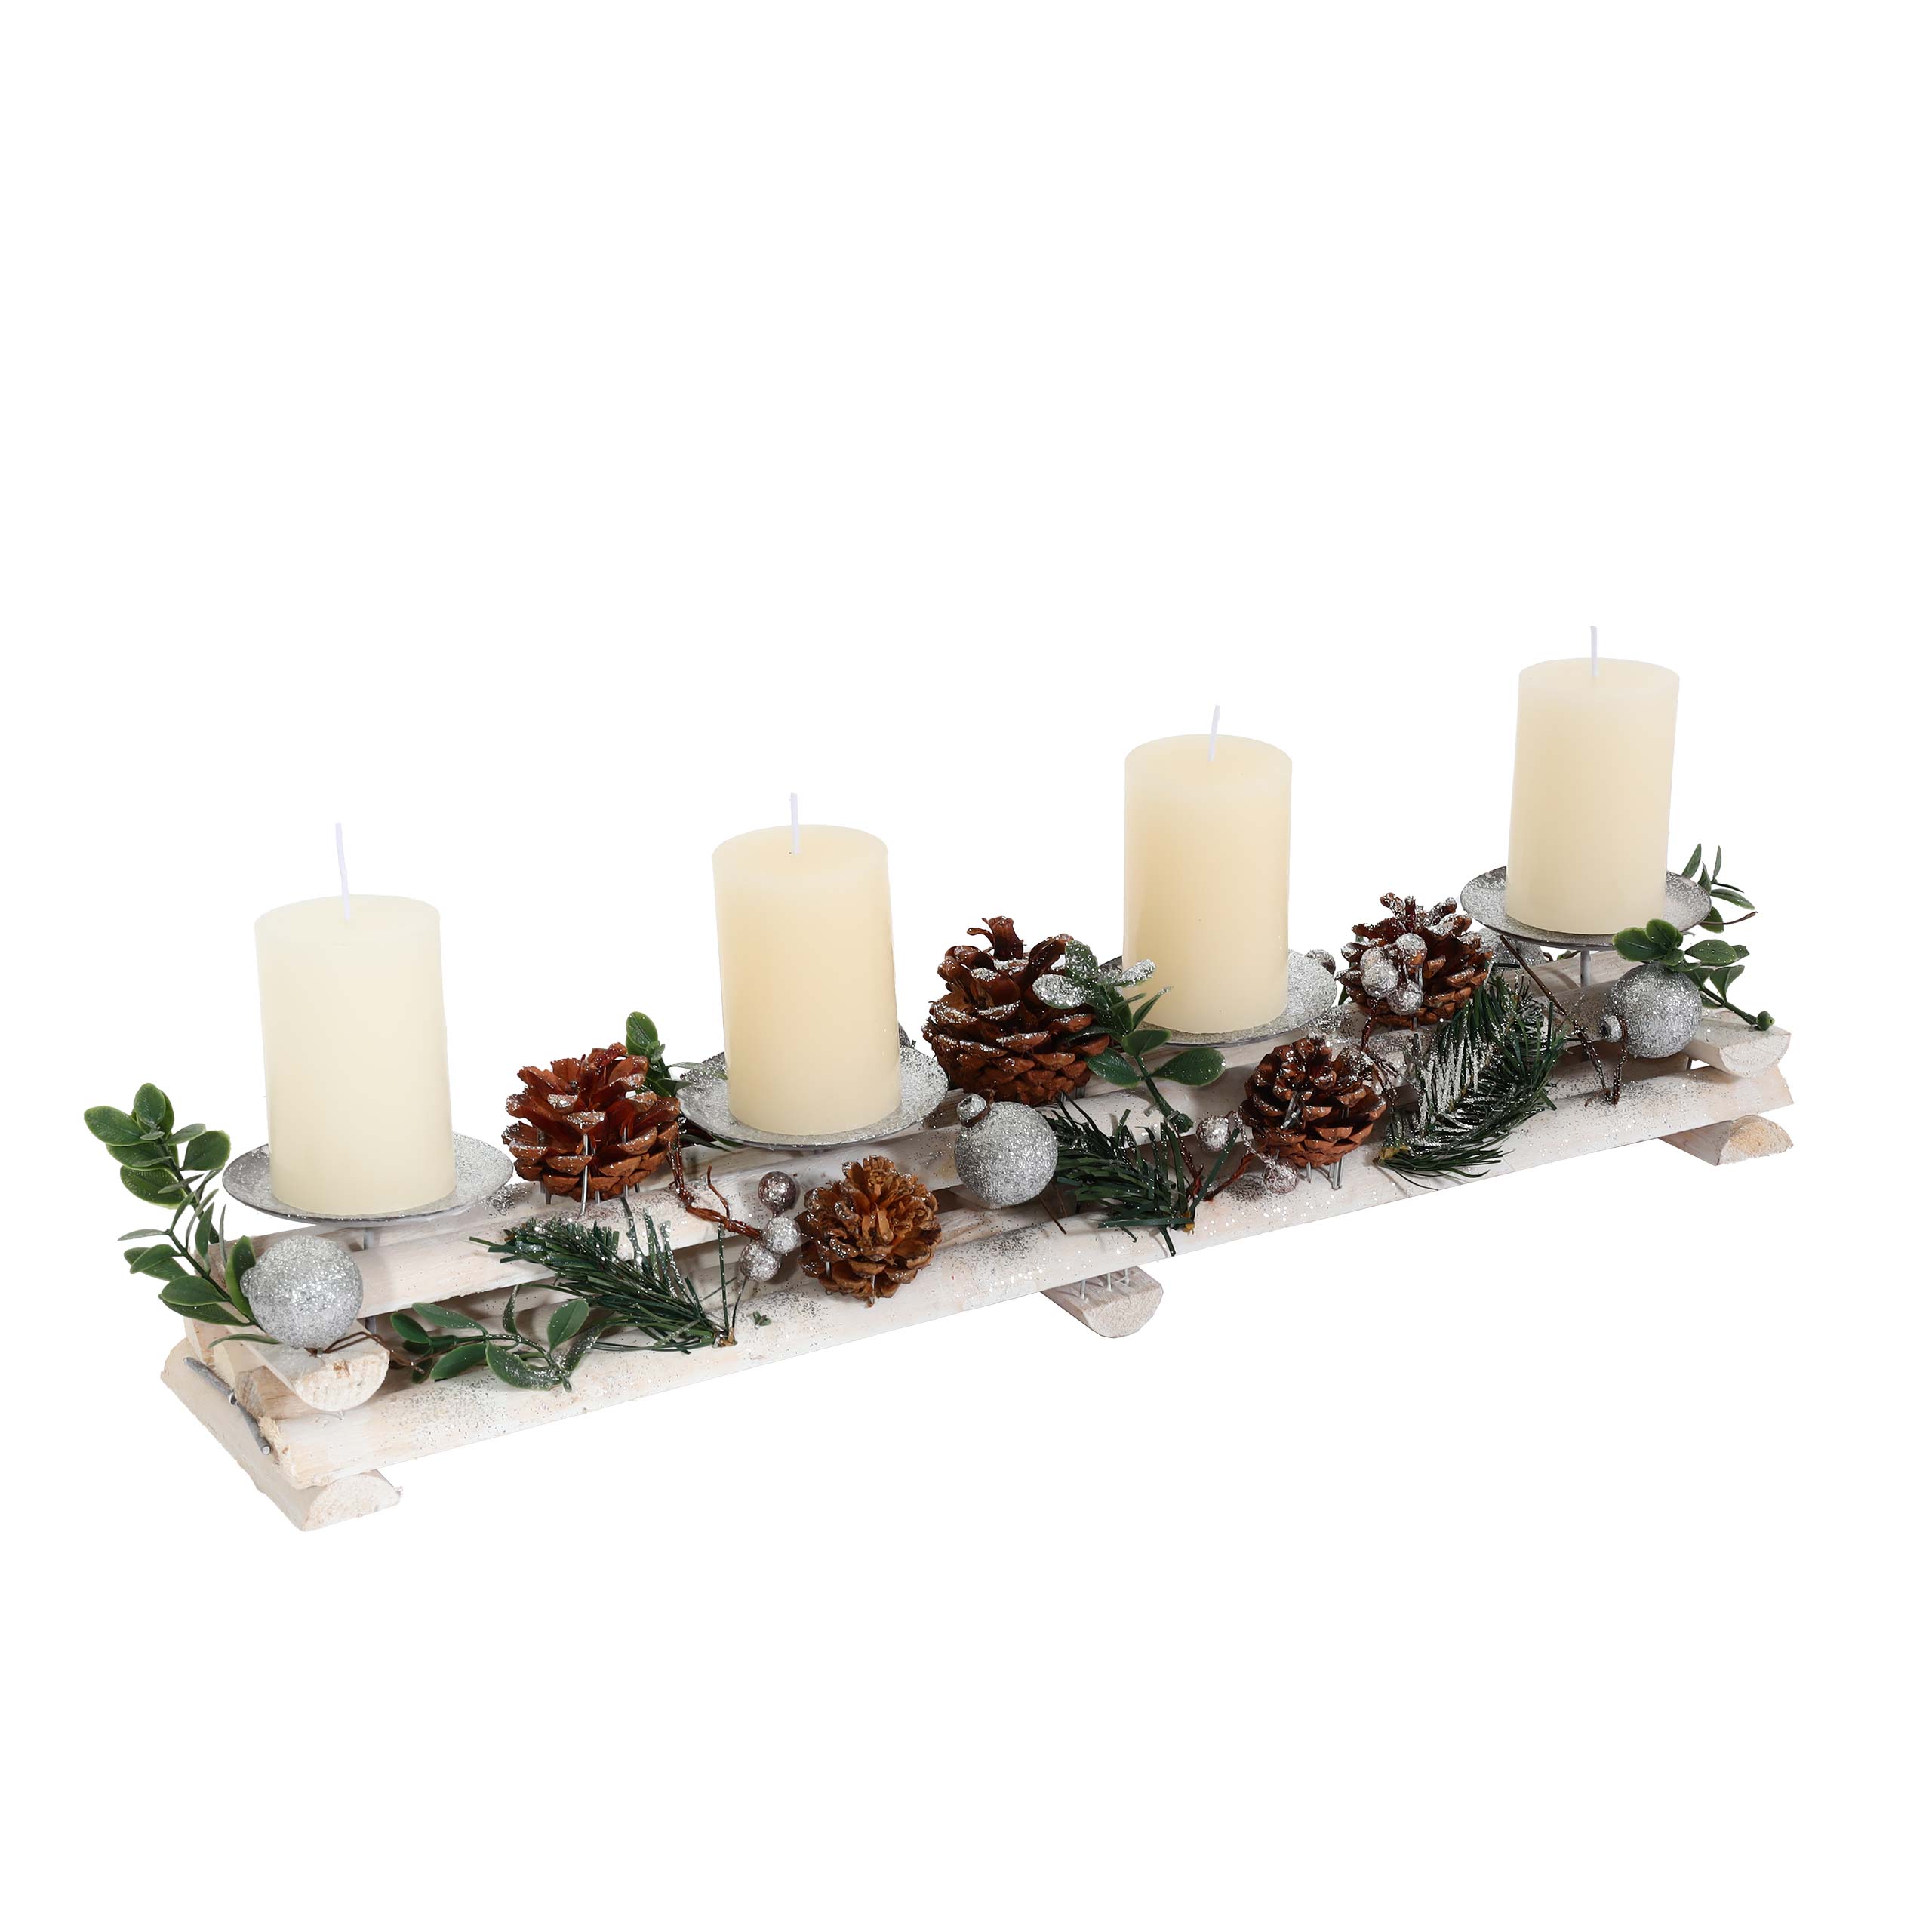 18x49x13cm mit Adventsgesteck weiß Adventskranz mit Kerzen MCW-M12 silber Weihnachtsdeko Kerzenhaltern, Holz